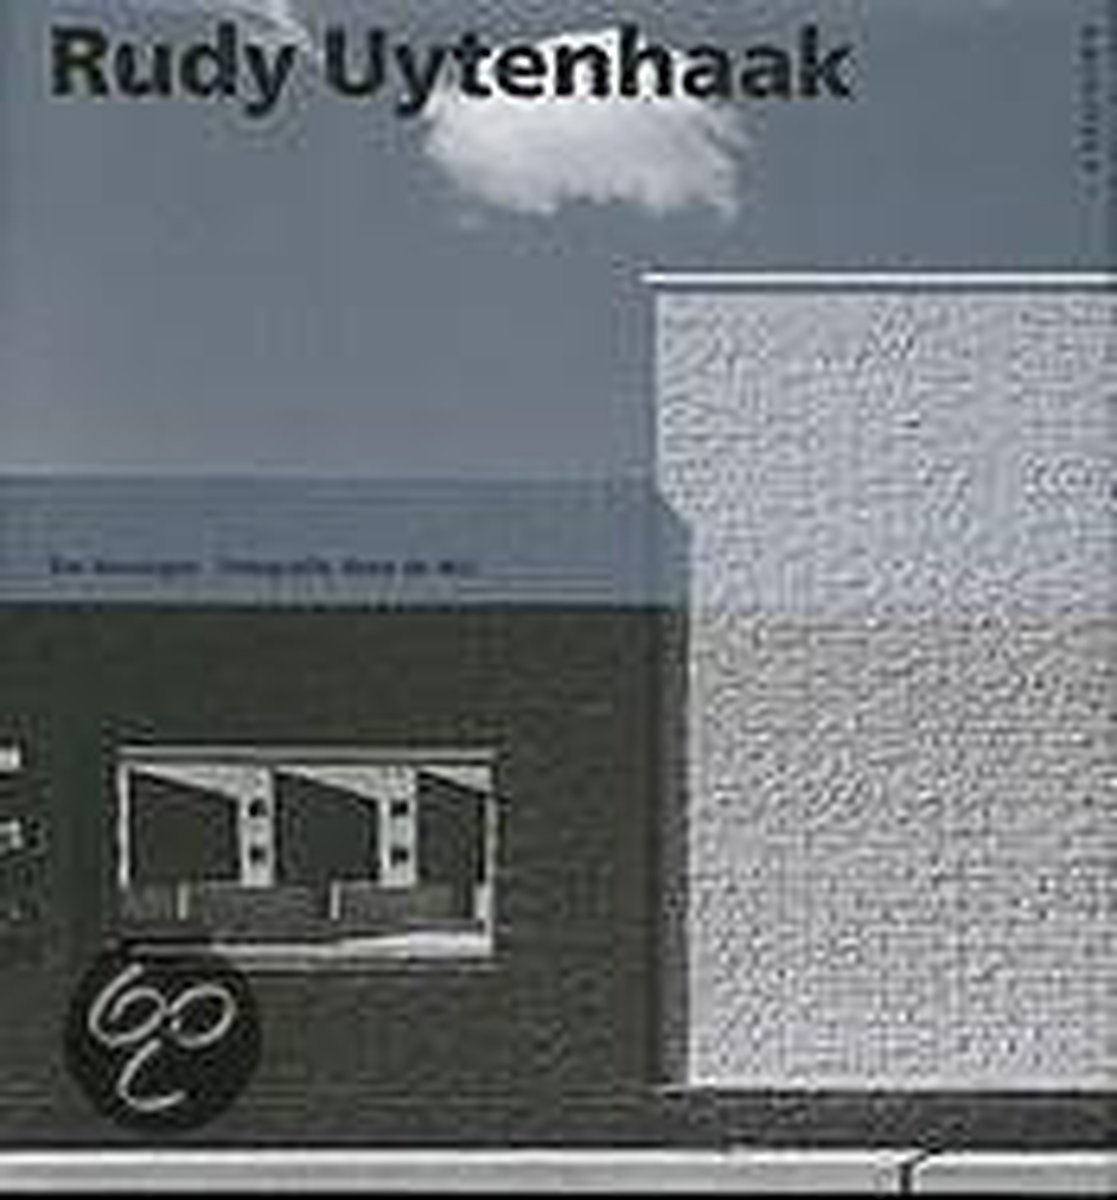 Rudy Uytenhaak, architect / Monografieen van Nederlandse architecten / 14